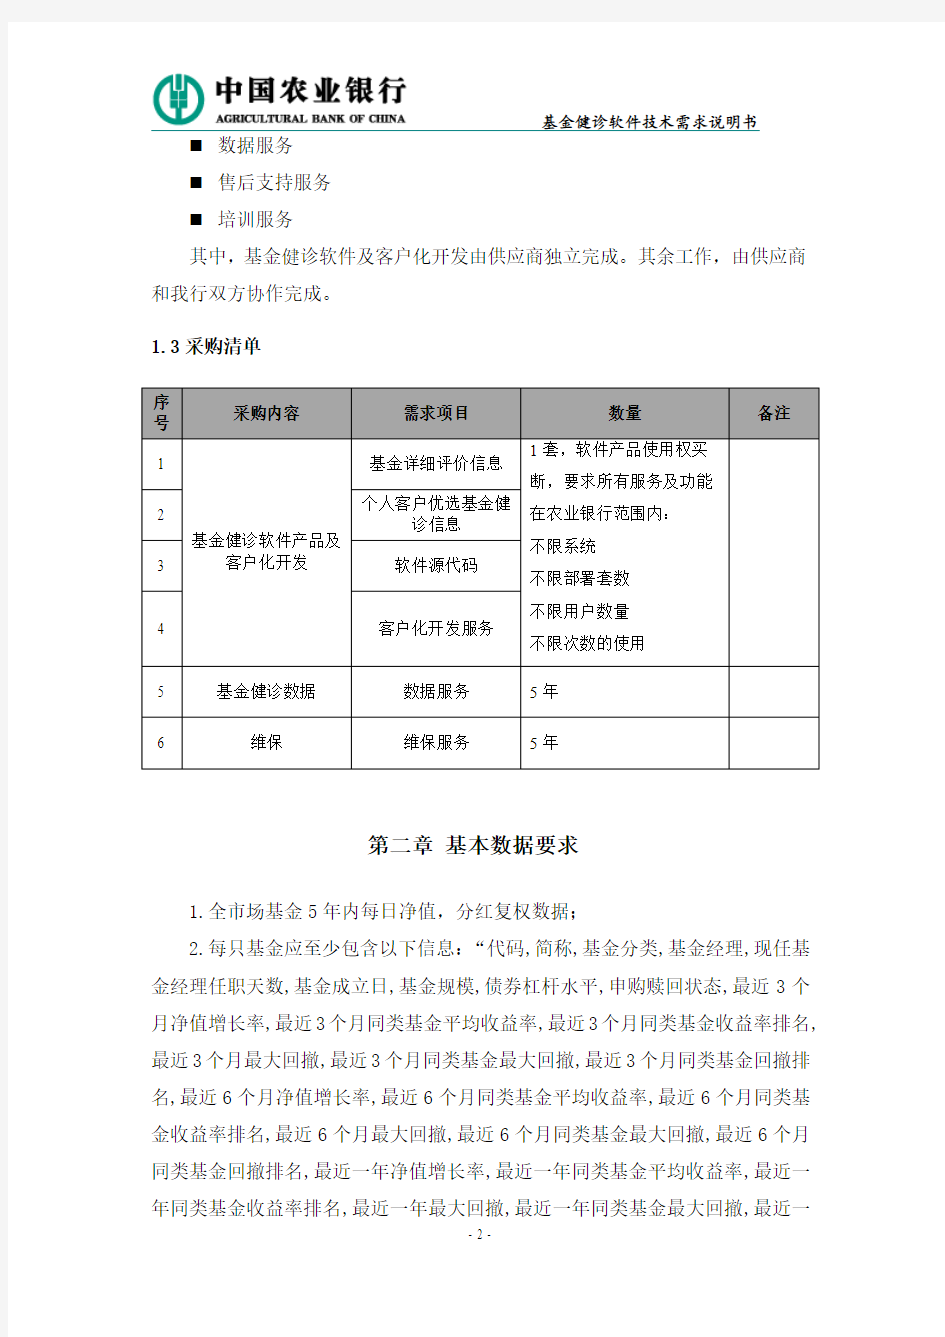 中国农业银行个人业务集中作业系统技术需求说明书